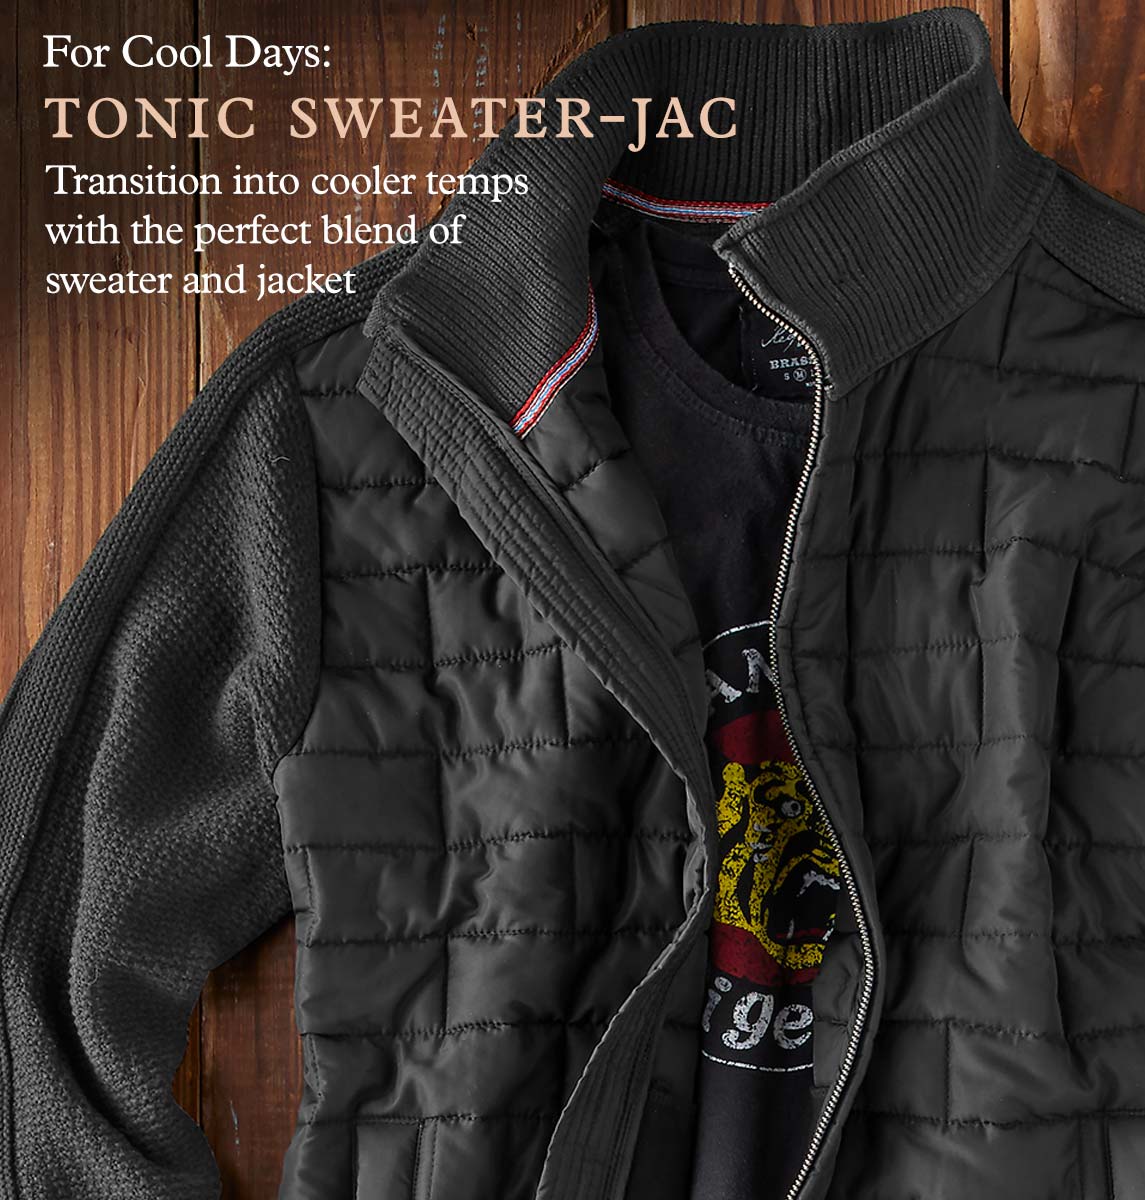 Tonic Sweater-Jac